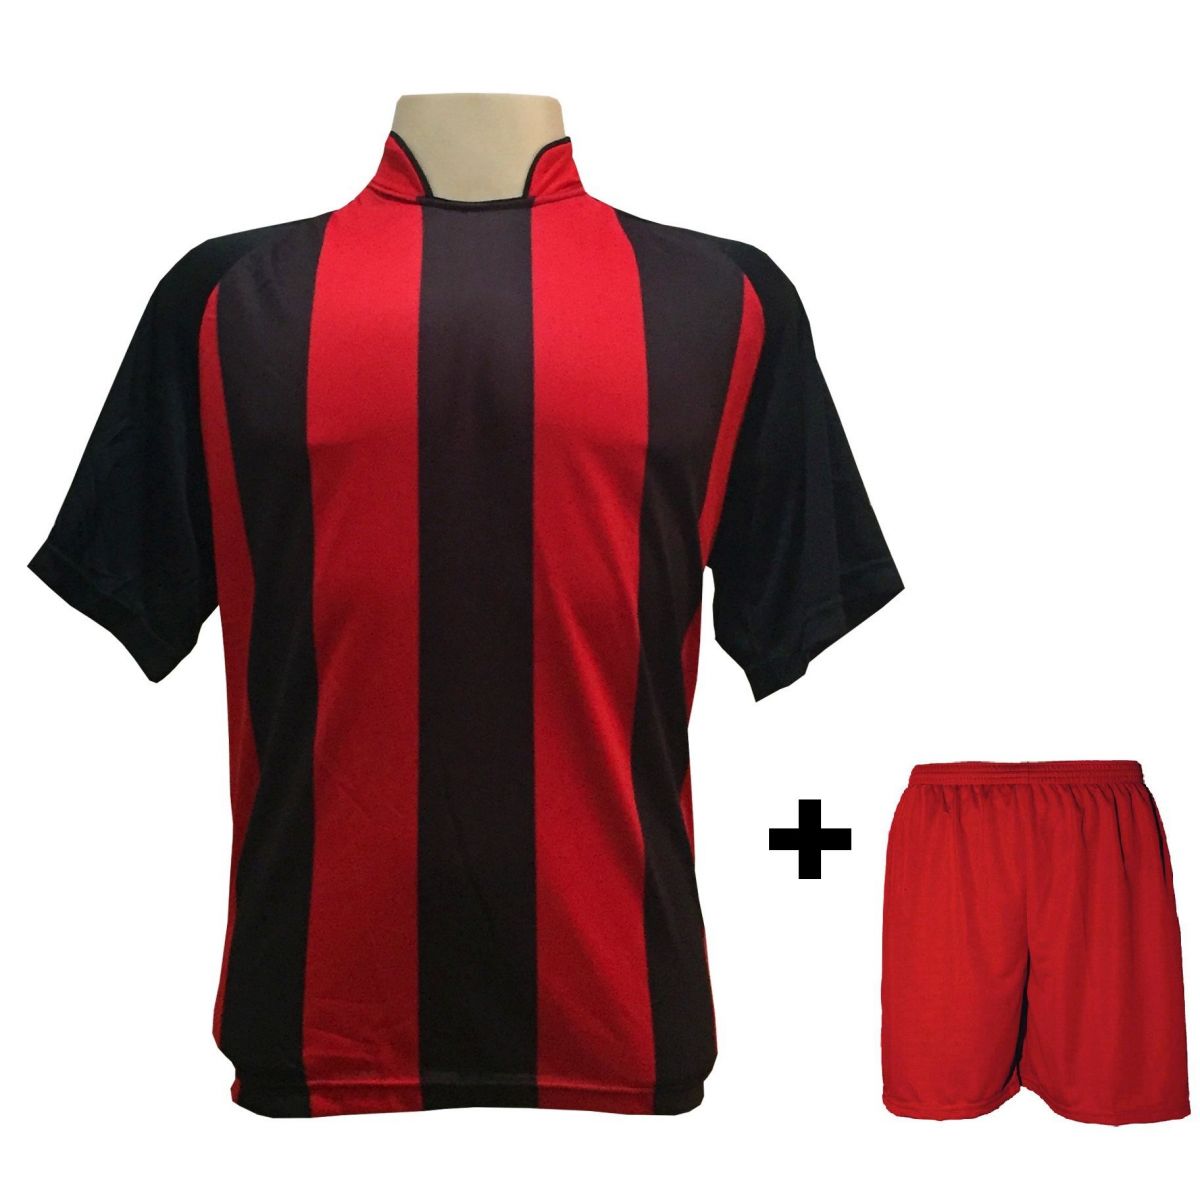 Uniforme Esportivo com 20 camisas modelo Milan Preto/Vermelho + 20 calções modelo Madrid Vermelho + Brindes 